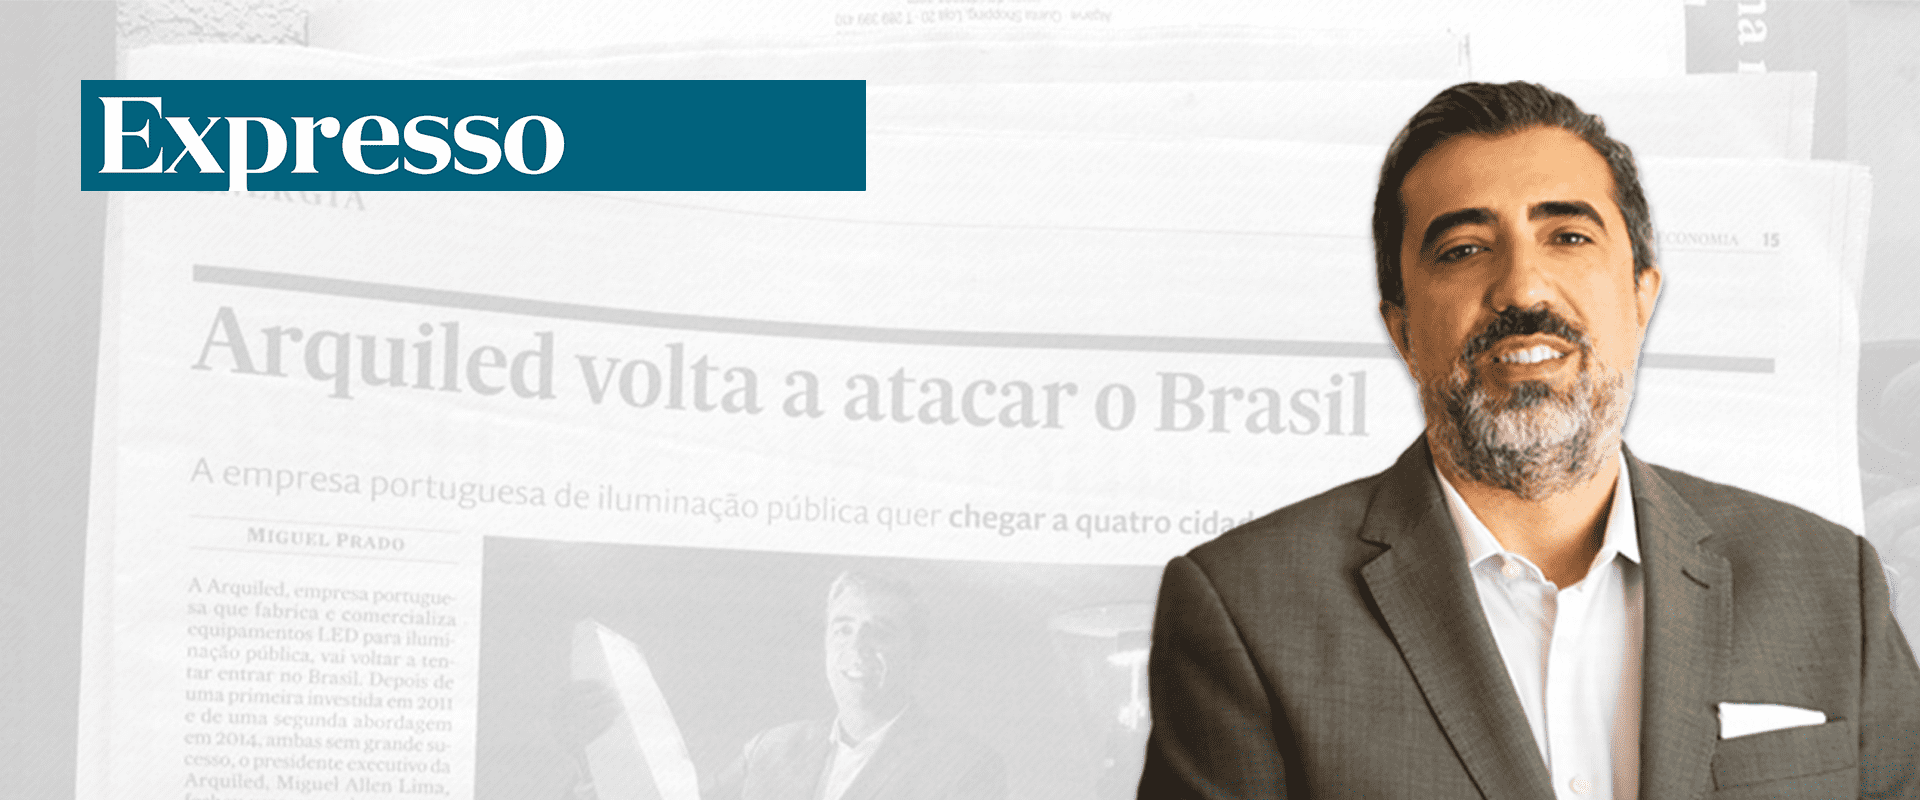 Arquiled volta a atacar no Brasil - Semanário expresso